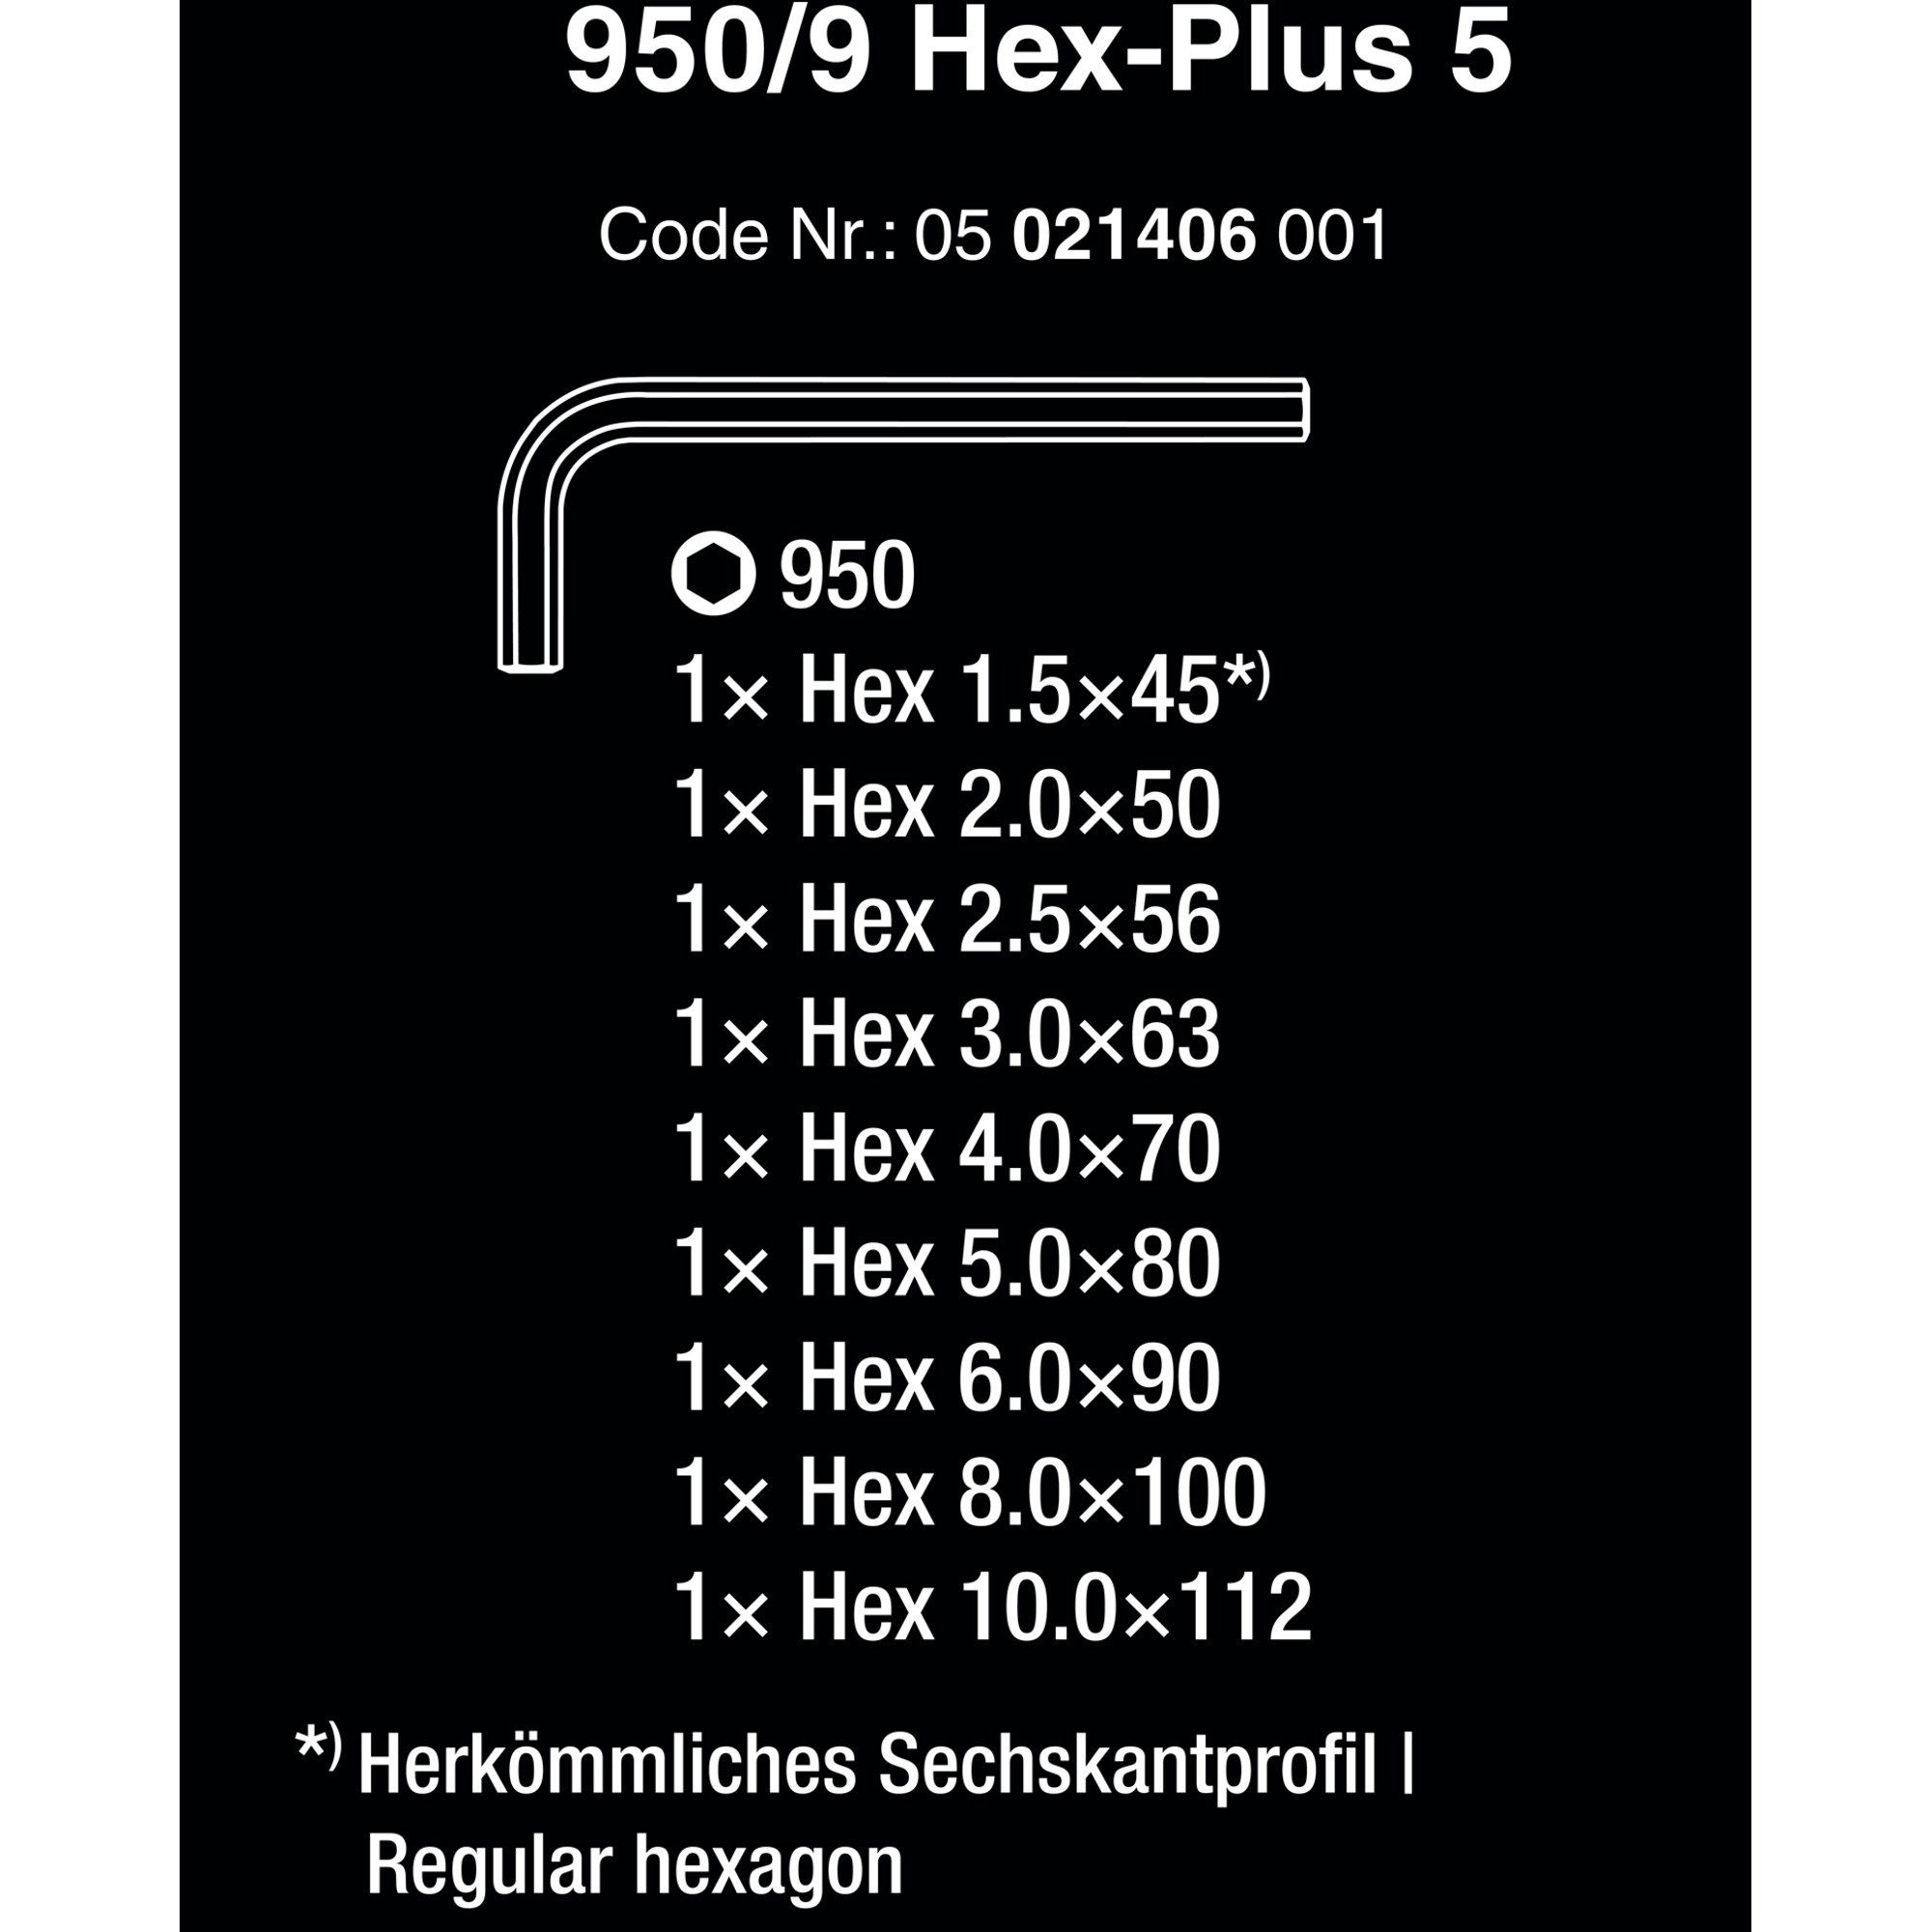 Wera Winkelschlüsselsatz Wera 950/9 Schraubendreher Hex-Plus 5